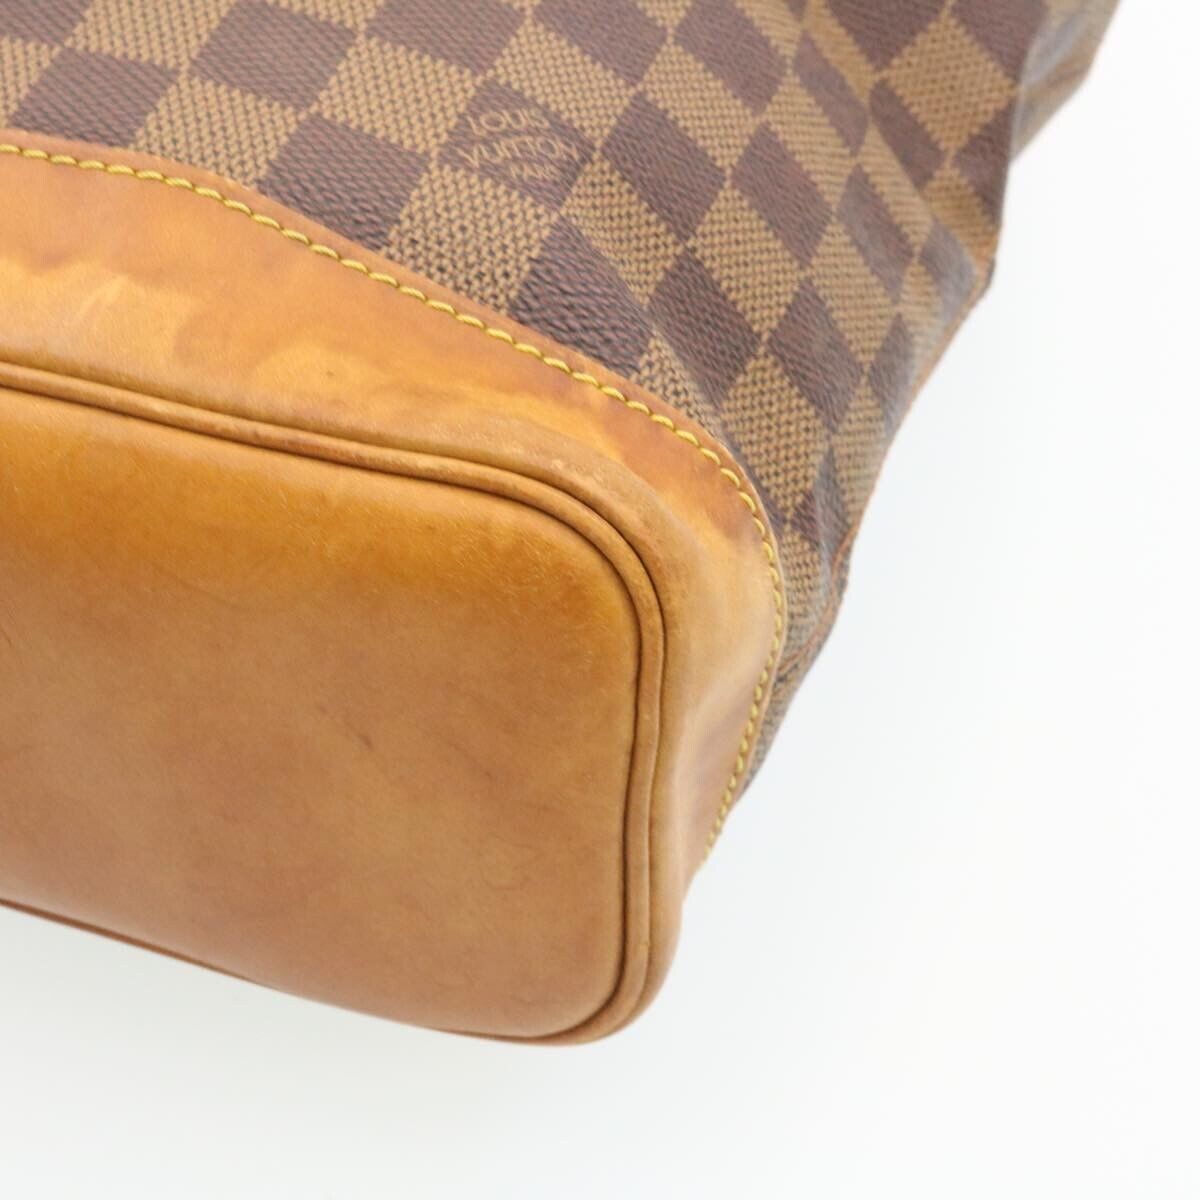 Louis Vuitton Chelsea Centenaire Ebene Damier Canvas Tote Hand Bag